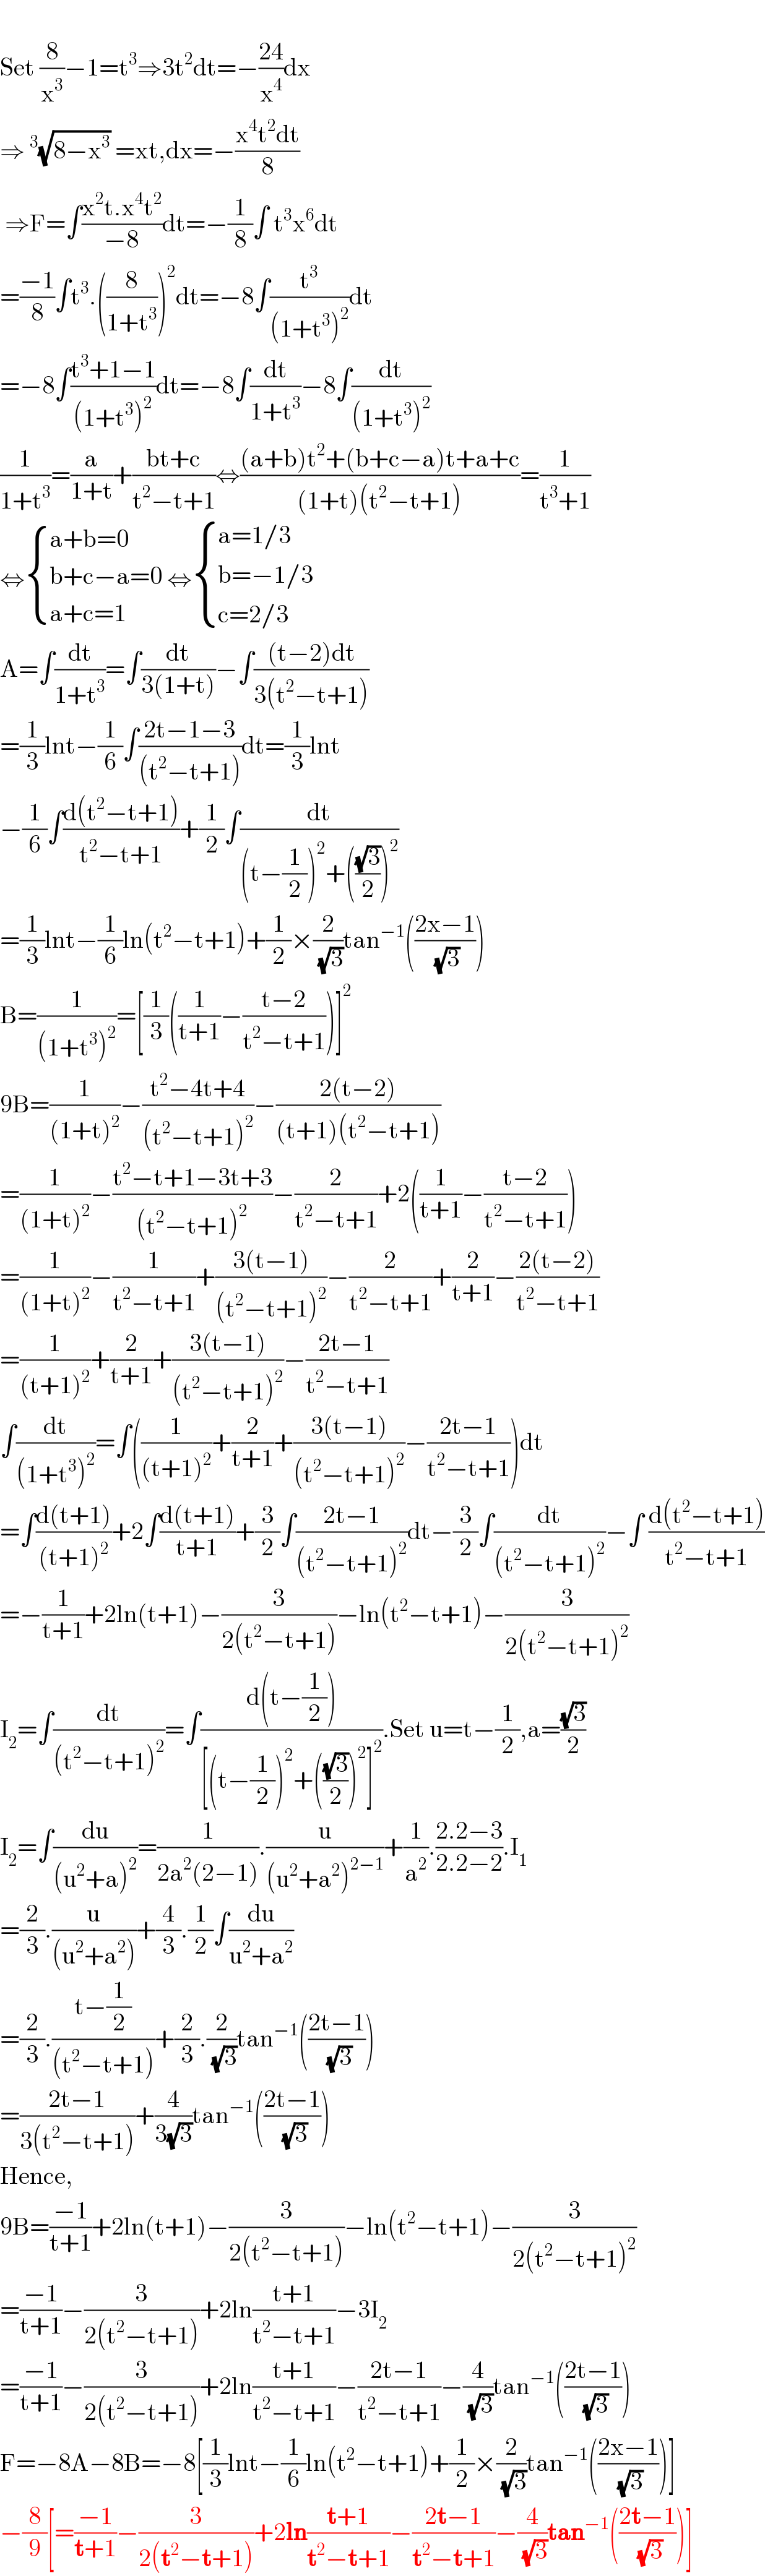   Set (8/x^3 )−1=t^3 ⇒3t^2 dt=−((24)/x^4 )dx  ⇒^3 (√(8−x^3 )) =xt,dx=−((x^4 t^2 dt)/8)   ⇒F=∫((x^2 t.x^4 t^2 )/(−8))dt=−(1/8)∫ t^3 x^6 dt  =((−1)/8)∫t^3 .((8/(1+t^3 )))^2 dt=−8∫(t^3 /((1+t^3 )^2 ))dt  =−8∫((t^3 +1−1)/((1+t^3 )^2 ))dt=−8∫(dt/(1+t^3 ))−8∫(dt/((1+t^3 )^2 ))  (1/(1+t^3 ))=(a/(1+t))+((bt+c)/(t^2 −t+1))⇔(((a+b)t^2 +(b+c−a)t+a+c)/((1+t)(t^2 −t+1)))=(1/(t^3 +1))  ⇔ { ((a+b=0)),((b+c−a=0)),((a+c=1)) :} ⇔ { ((a=1/3)),((b=−1/3)),((c=2/3)) :}  A=∫(dt/(1+t^3 ))=∫(dt/(3(1+t)))−∫(((t−2)dt)/(3(t^2 −t+1)))  =(1/3)lnt−(1/6)∫((2t−1−3)/((t^2 −t+1)))dt=(1/3)lnt  −(1/6)∫((d(t^2 −t+1))/(t^2 −t+1))+(1/2)∫(dt/((t−(1/2))^2 +(((√3)/2))^2 ))  =(1/3)lnt−(1/6)ln(t^2 −t+1)+(1/2)×(2/( (√3)))tan^(−1) (((2x−1)/( (√3))))  B=(1/((1+t^3 )^2 ))=[(1/3)((1/(t+1))−((t−2)/(t^2 −t+1)))]^2   9B=(1/((1+t)^2 ))−((t^2 −4t+4)/((t^2 −t+1)^2 ))−((2(t−2))/((t+1)(t^2 −t+1)))  =(1/((1+t)^2 ))−((t^2 −t+1−3t+3)/((t^2 −t+1)^2 ))−(2/(t^2 −t+1))+2((1/(t+1))−((t−2)/(t^2 −t+1)))  =(1/((1+t)^2 ))−(1/(t^2 −t+1))+((3(t−1))/((t^2 −t+1)^2 ))−(2/(t^2 −t+1))+(2/(t+1))−((2(t−2))/(t^2 −t+1))  =(1/((t+1)^2 ))+(2/(t+1))+((3(t−1))/((t^2 −t+1)^2 ))−((2t−1)/(t^2 −t+1))  ∫(dt/((1+t^3 )^2 ))=∫((1/((t+1)^2 ))+(2/(t+1))+((3(t−1))/((t^2 −t+1)^2 ))−((2t−1)/(t^2 −t+1)))dt  =∫((d(t+1))/((t+1)^2 ))+2∫((d(t+1))/(t+1))+(3/2)∫((2t−1)/((t^2 −t+1)^2 ))dt−(3/2)∫(dt/((t^2 −t+1)^2 ))−∫ ((d(t^2 −t+1))/(t^2 −t+1))  =−(1/(t+1))+2ln(t+1)−(3/(2(t^2 −t+1)))−ln(t^2 −t+1)−(3/(2(t^2 −t+1)^2 ))  I_2 =∫(dt/((t^2 −t+1)^2 ))=∫((d(t−(1/2)))/([(t−(1/2))^2 +(((√3)/2))^2 ]^2 )).Set u=t−(1/2),a=((√3)/2)  I_2 =∫(du/((u^2 +a)^2 ))=(1/(2a^2 (2−1))).(u/((u^2 +a^2 )^(2−1) ))+(1/a^2 ).((2.2−3)/(2.2−2)).I_1   =(2/3).(u/((u^2 +a^2 )))+(4/3).(1/2)∫(du/(u^2 +a^2 ))  =(2/3).((t−(1/2))/((t^2 −t+1)))+(2/3).(2/( (√3)))tan^(−1) (((2t−1)/( (√3))))  =((2t−1)/(3(t^2 −t+1)))+(4/(3(√3)))tan^(−1) (((2t−1)/( (√3))))  Hence,  9B=((−1)/(t+1))+2ln(t+1)−(3/(2(t^2 −t+1)))−ln(t^2 −t+1)−(3/(2(t^2 −t+1)^2 ))  =((−1)/(t+1))−(3/(2(t^2 −t+1)))+2ln((t+1)/(t^2 −t+1))−3I_2   =((−1)/(t+1))−(3/(2(t^2 −t+1)))+2ln((t+1)/(t^2 −t+1))−((2t−1)/(t^2 −t+1))−(4/( (√3)))tan^(−1) (((2t−1)/( (√3))))  F=−8A−8B=−8[(1/3)lnt−(1/6)ln(t^2 −t+1)+(1/2)×(2/( (√3)))tan^(−1) (((2x−1)/( (√3))))]  −(8/9)[=((−1)/(t+1))−(3/(2(t^2 −t+1)))+2ln((t+1)/(t^2 −t+1))−((2t−1)/(t^2 −t+1))−(4/( (√3)))tan^(−1) (((2t−1)/( (√3))))]  